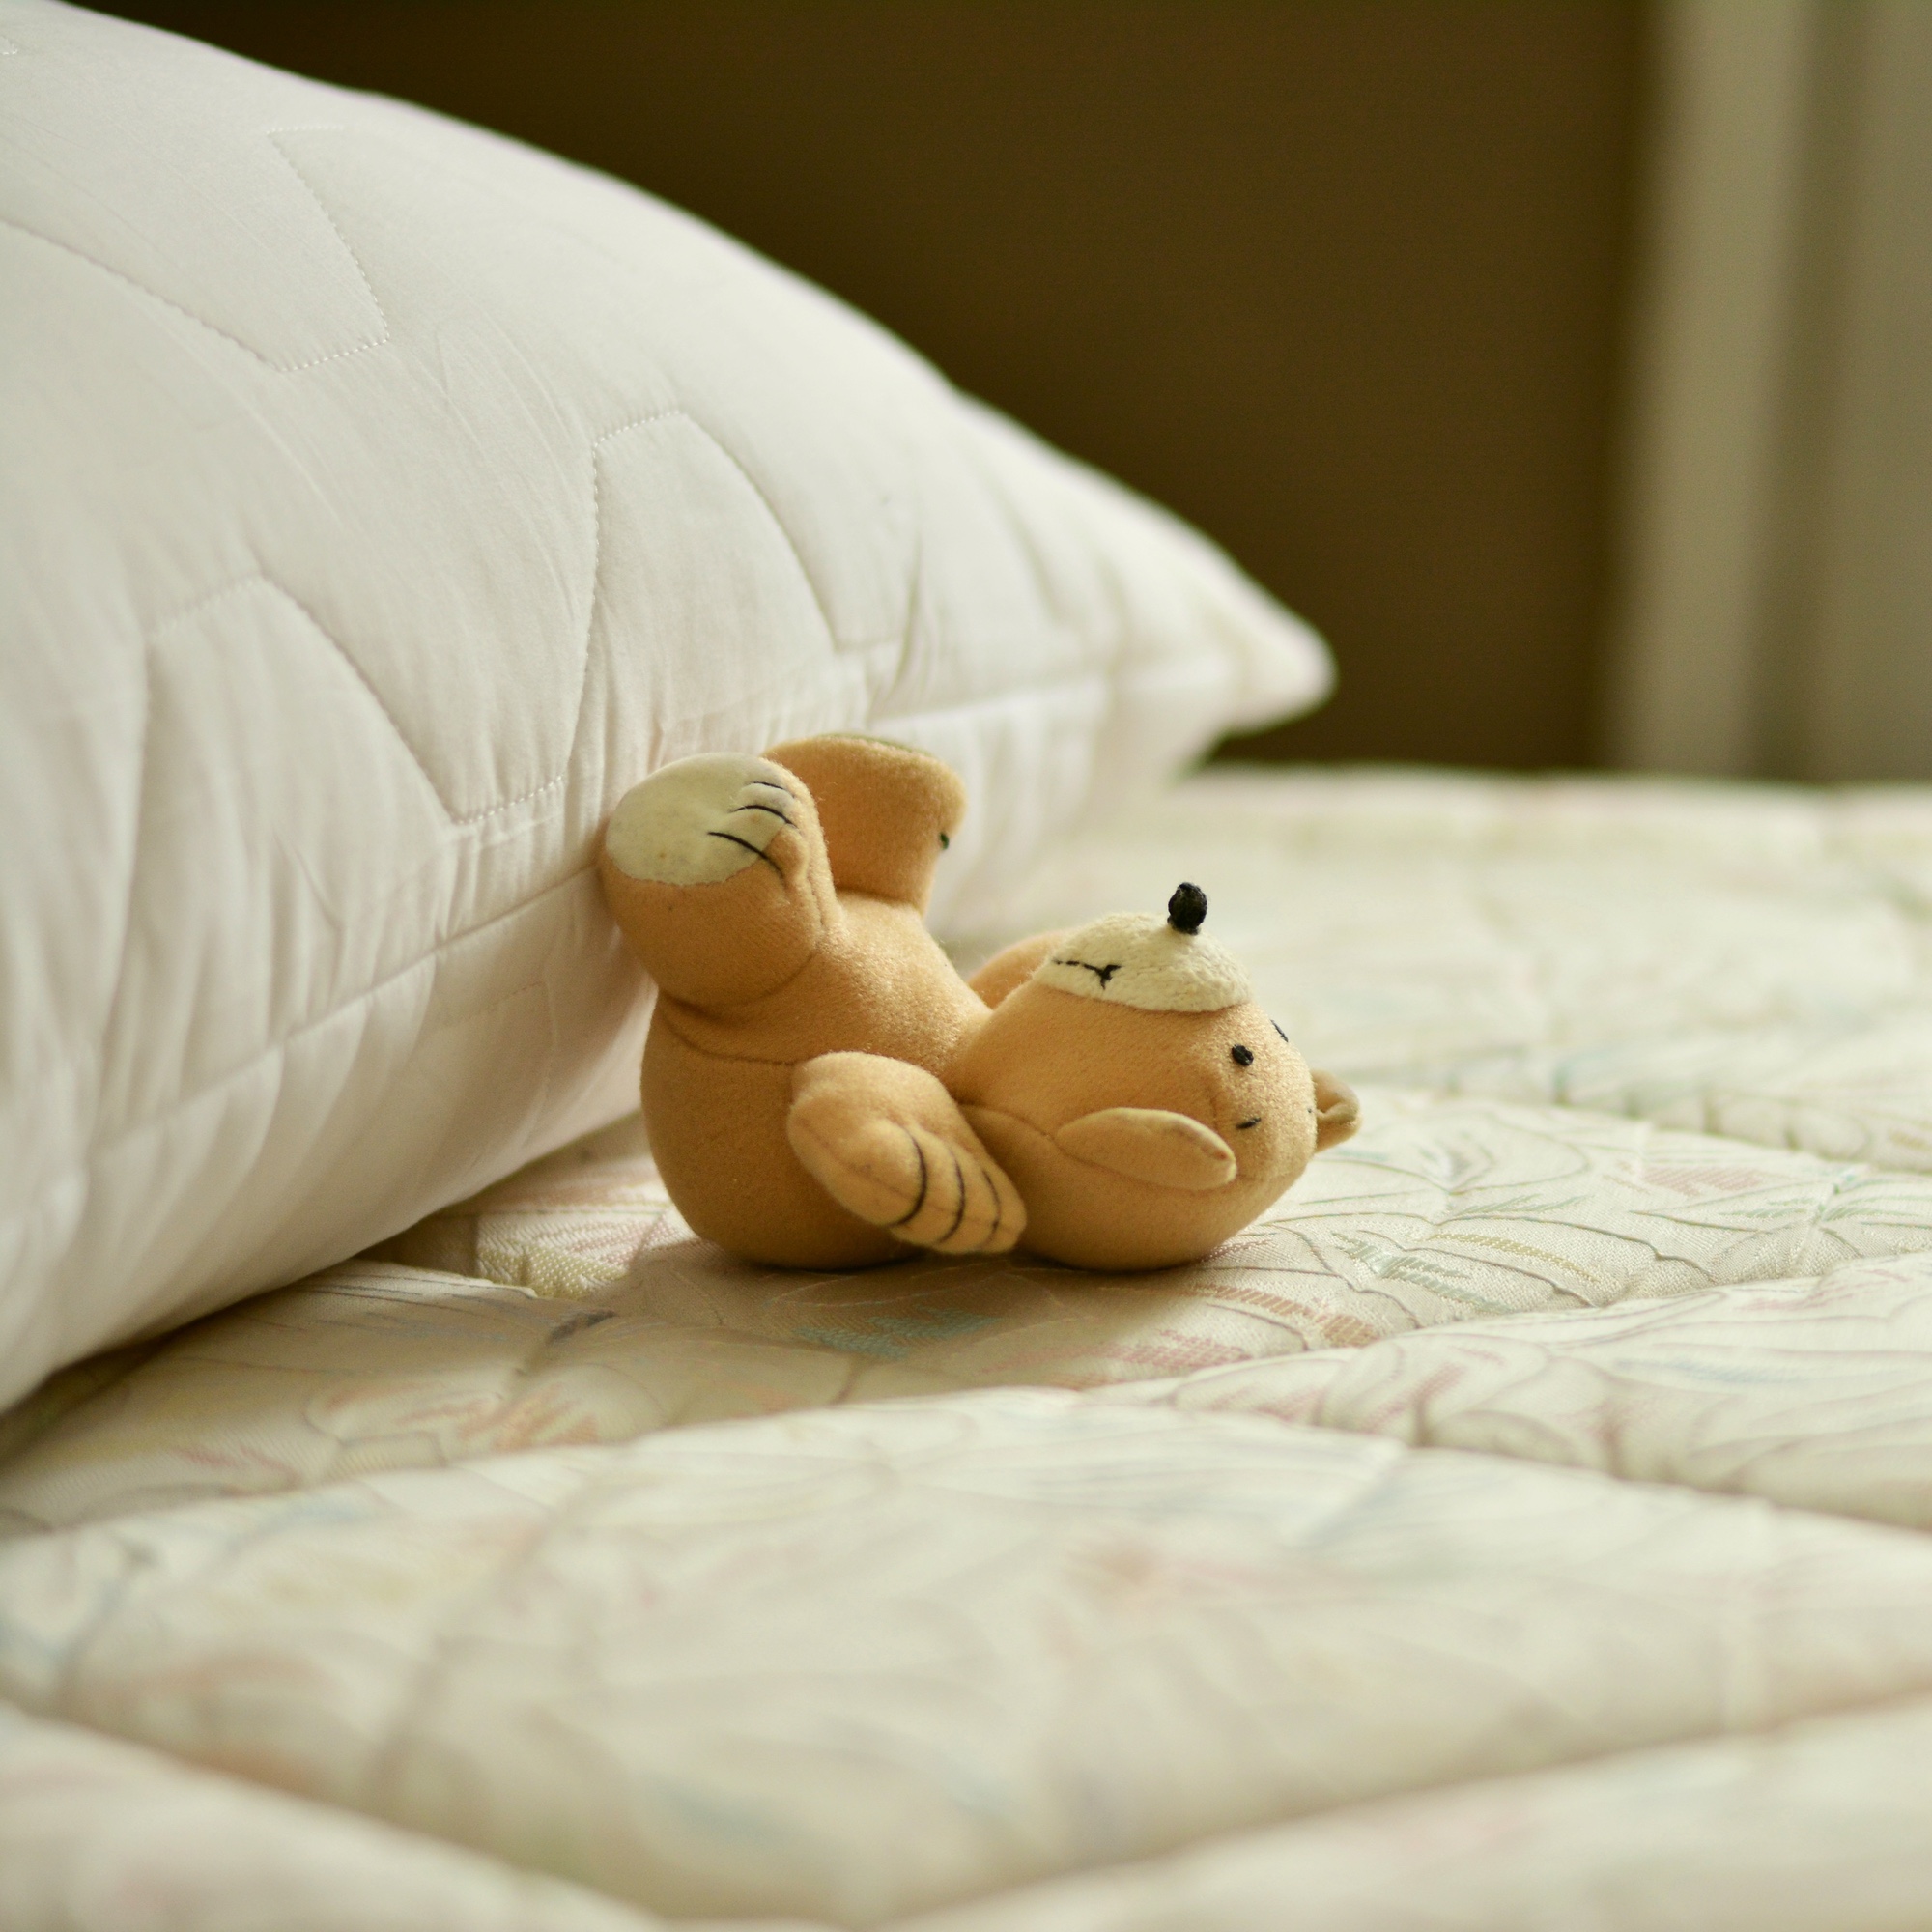 Foto: Stofftier, das neben einem Kissen auf einer Matratze liegt